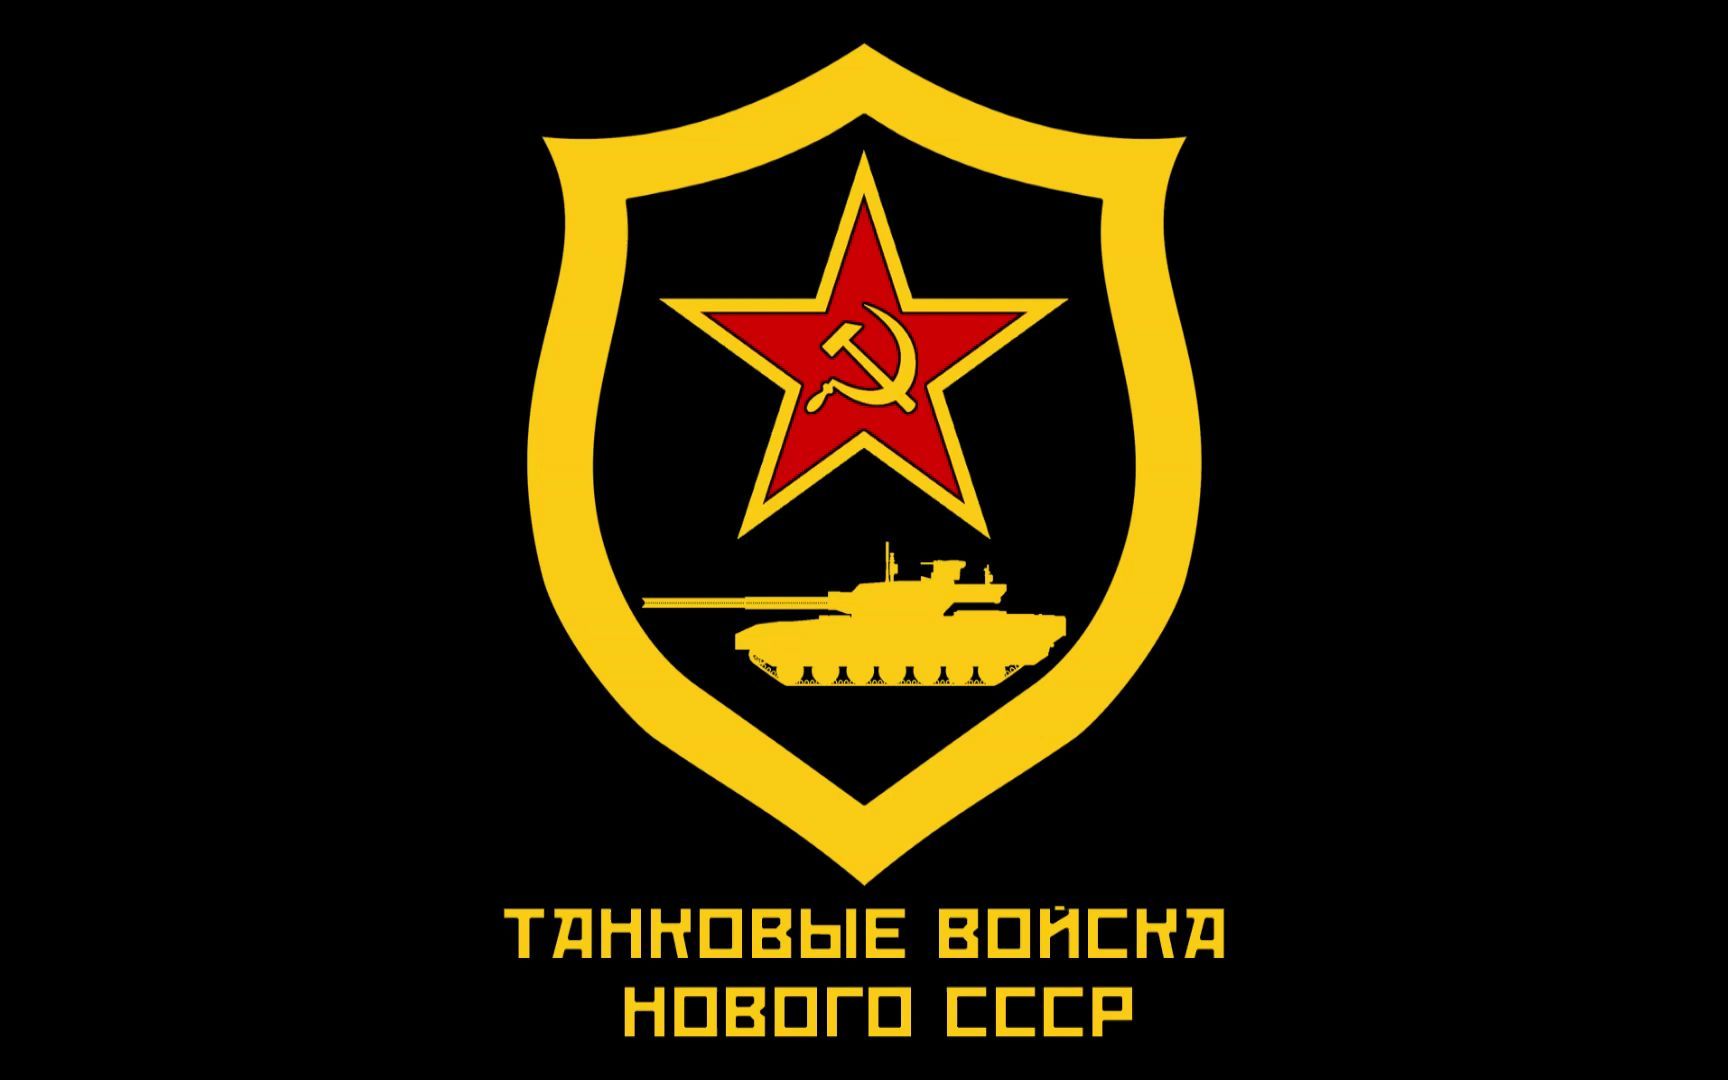 蚌埠装甲兵学院logo图片